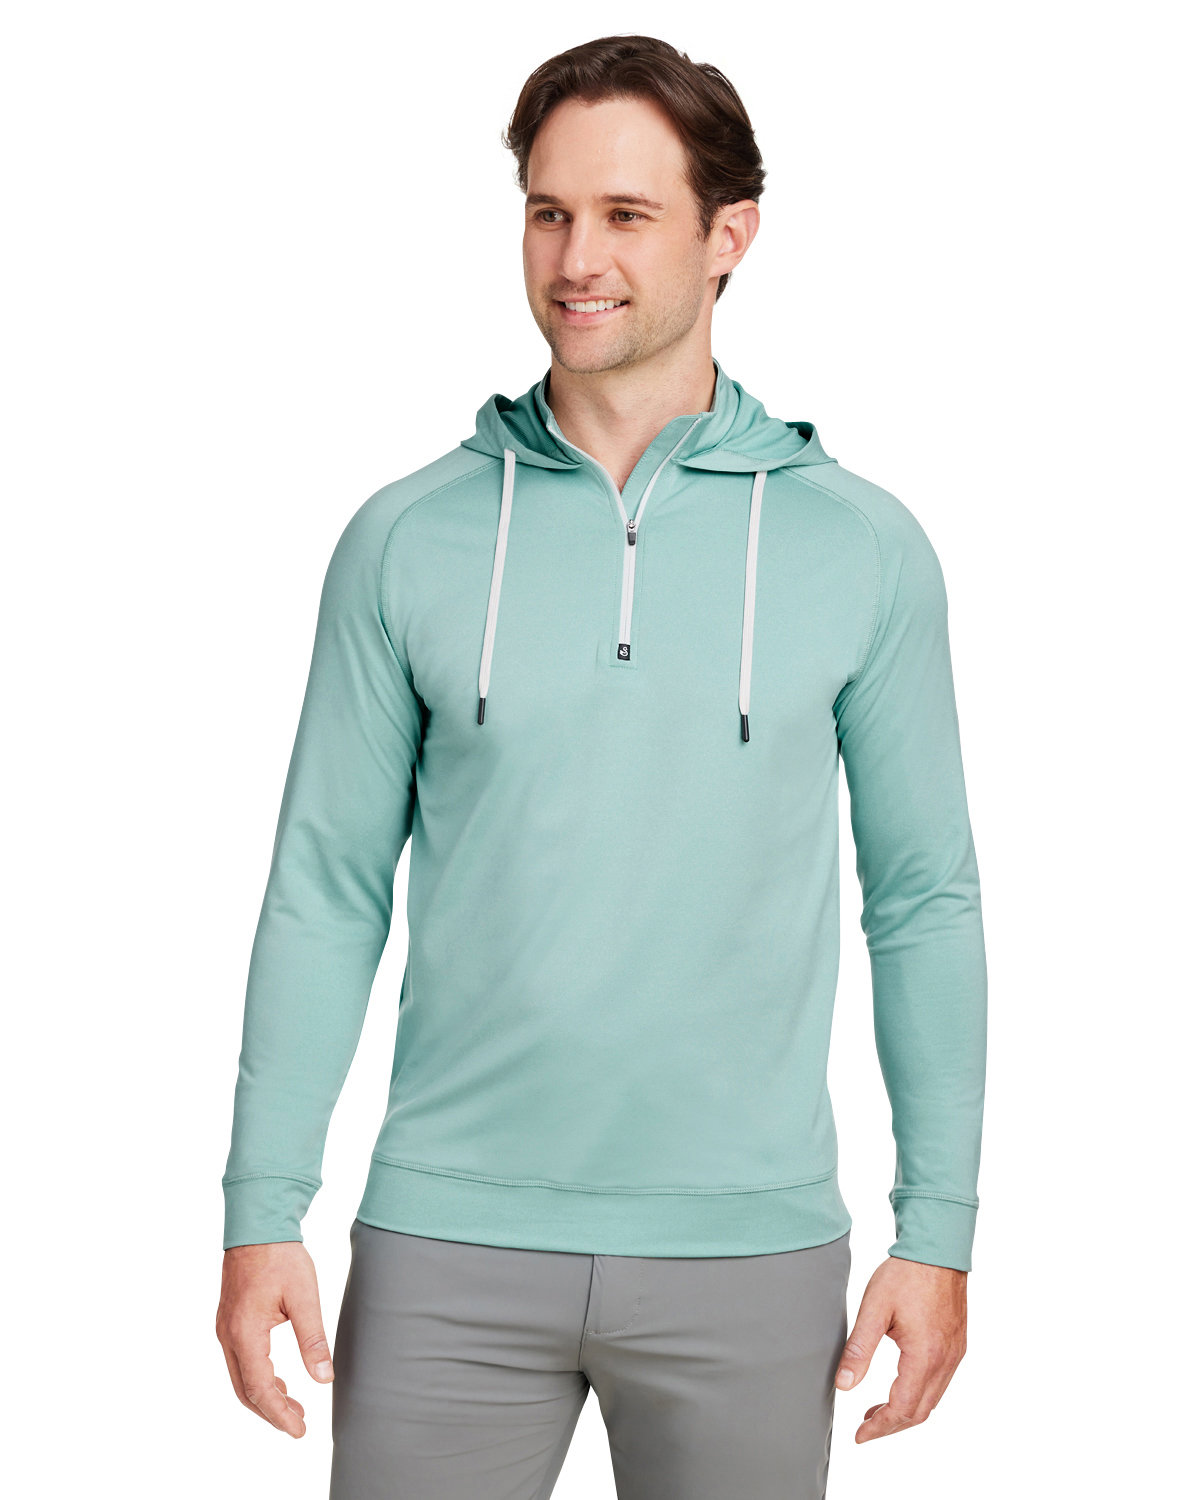 Unisex Vandyke Quarter-Zip Hooded Sweatshirt-Swannies Golf